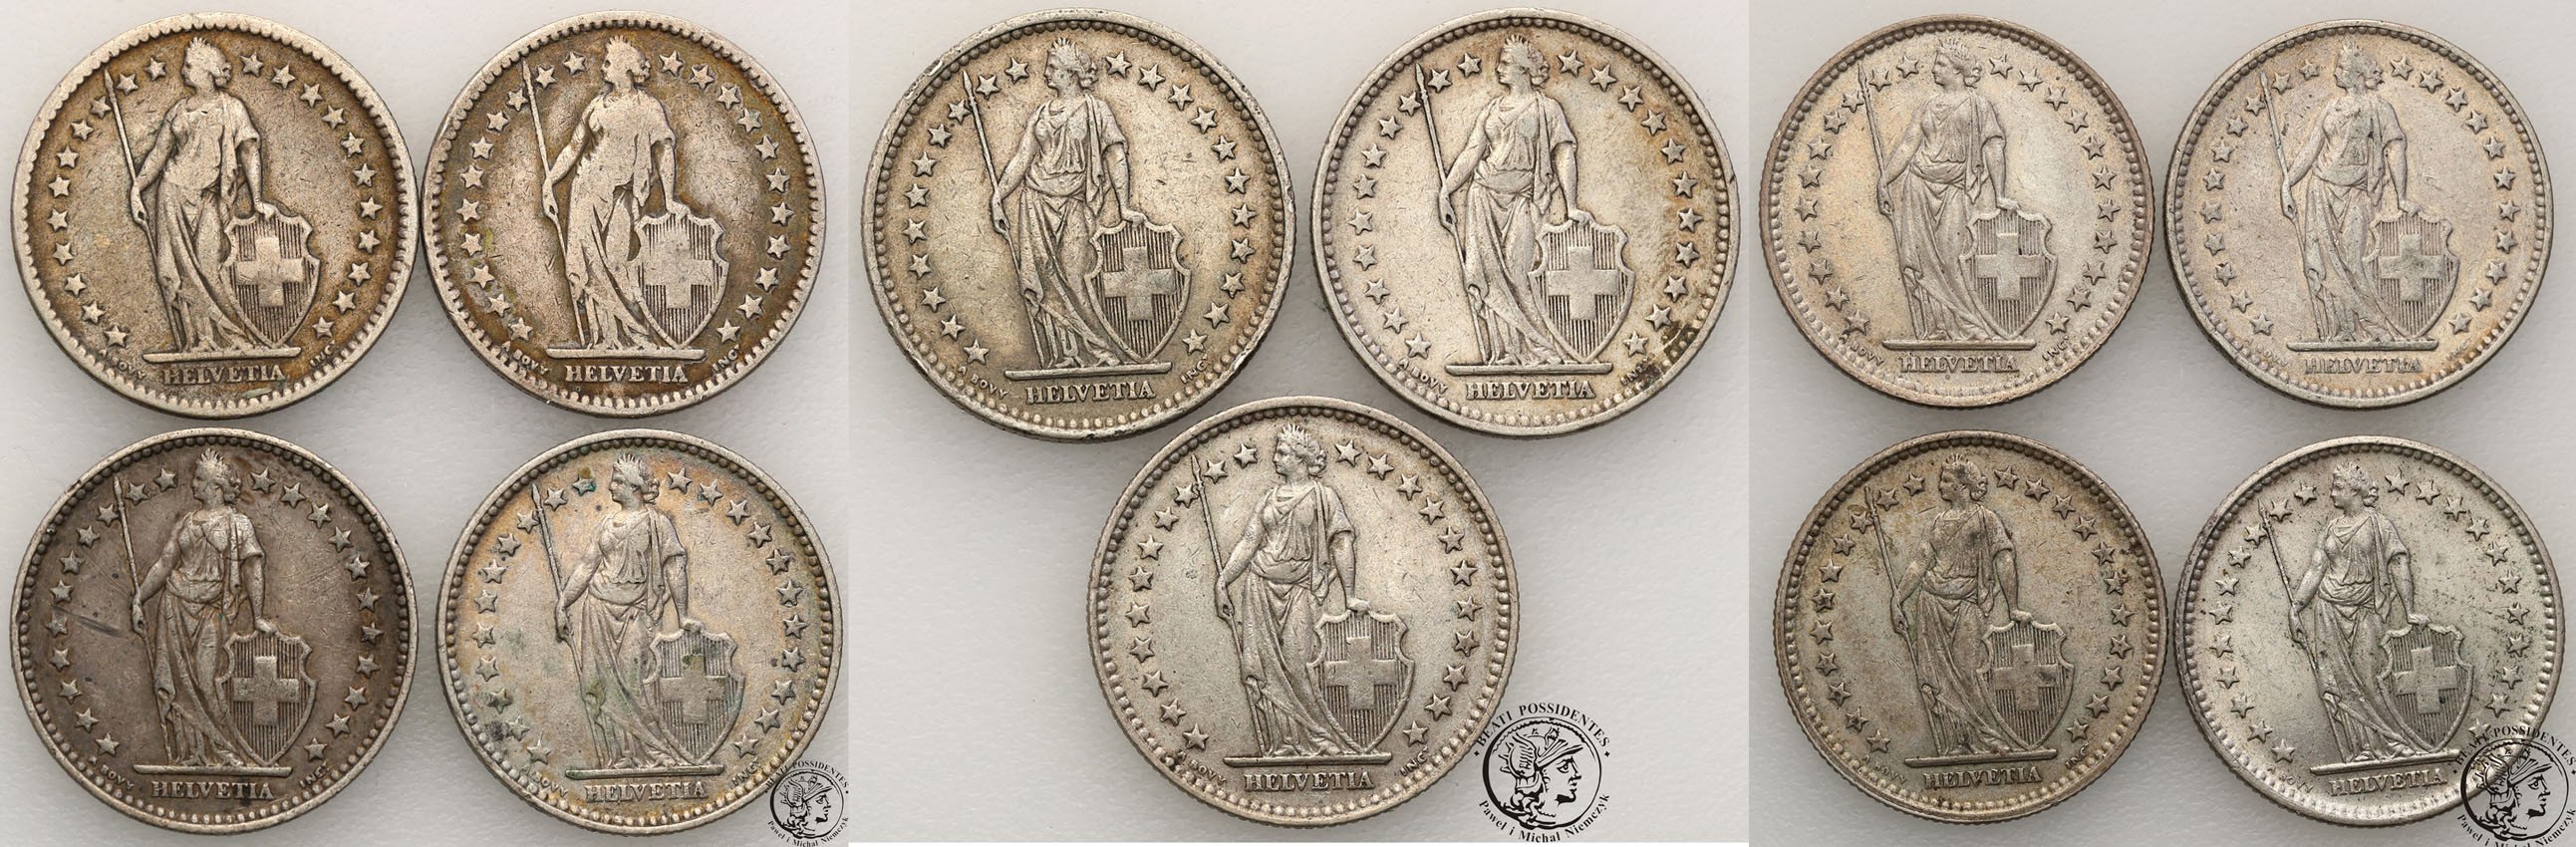 Szwajcaria. 2 franki zestaw 19 monet